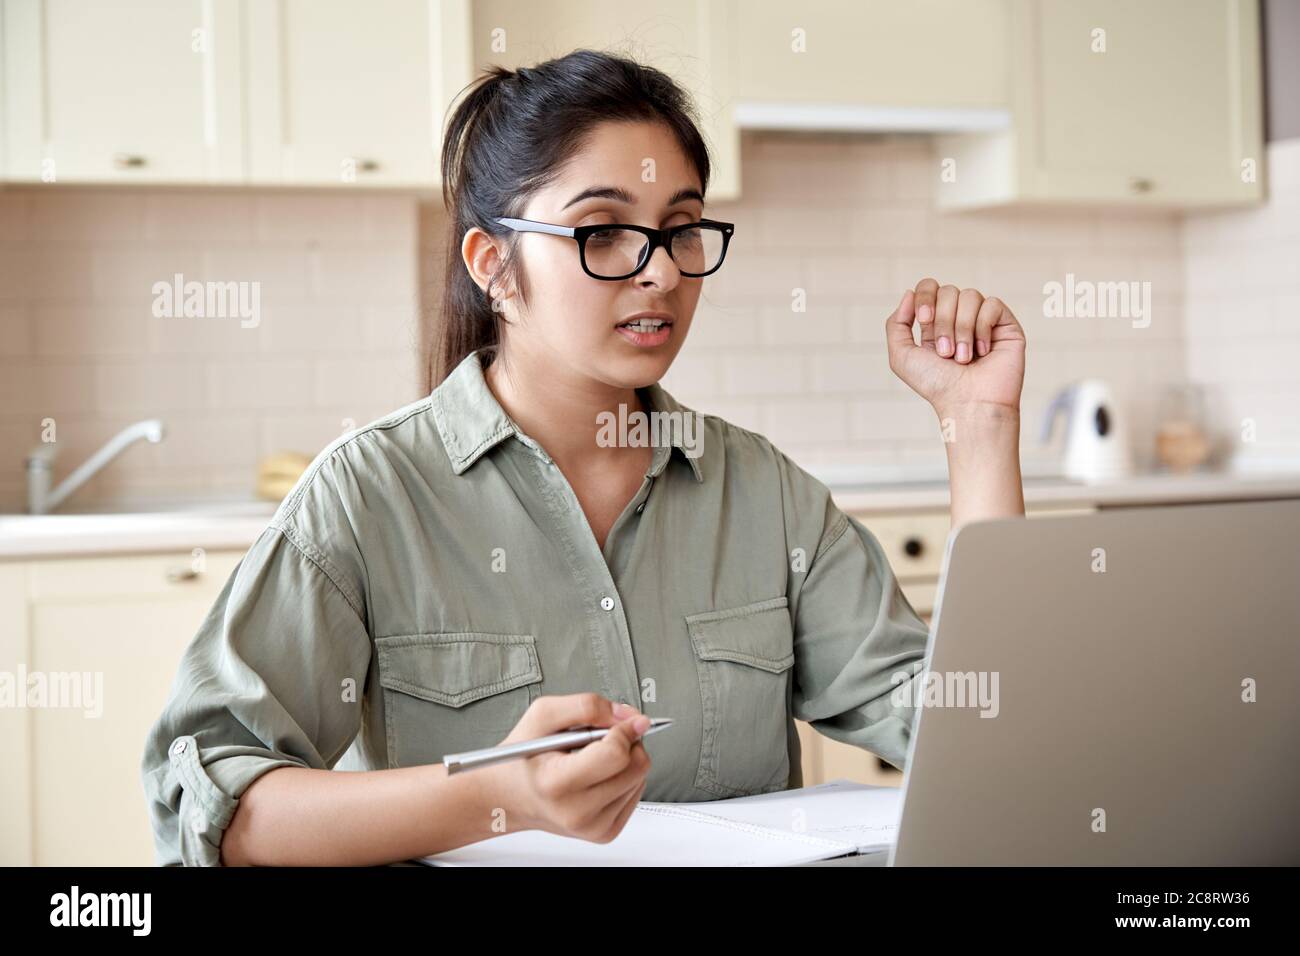 Femme indienne enseignant ou étudiante regardant un webinaire ou effectuant un appel vidéo. Banque D'Images